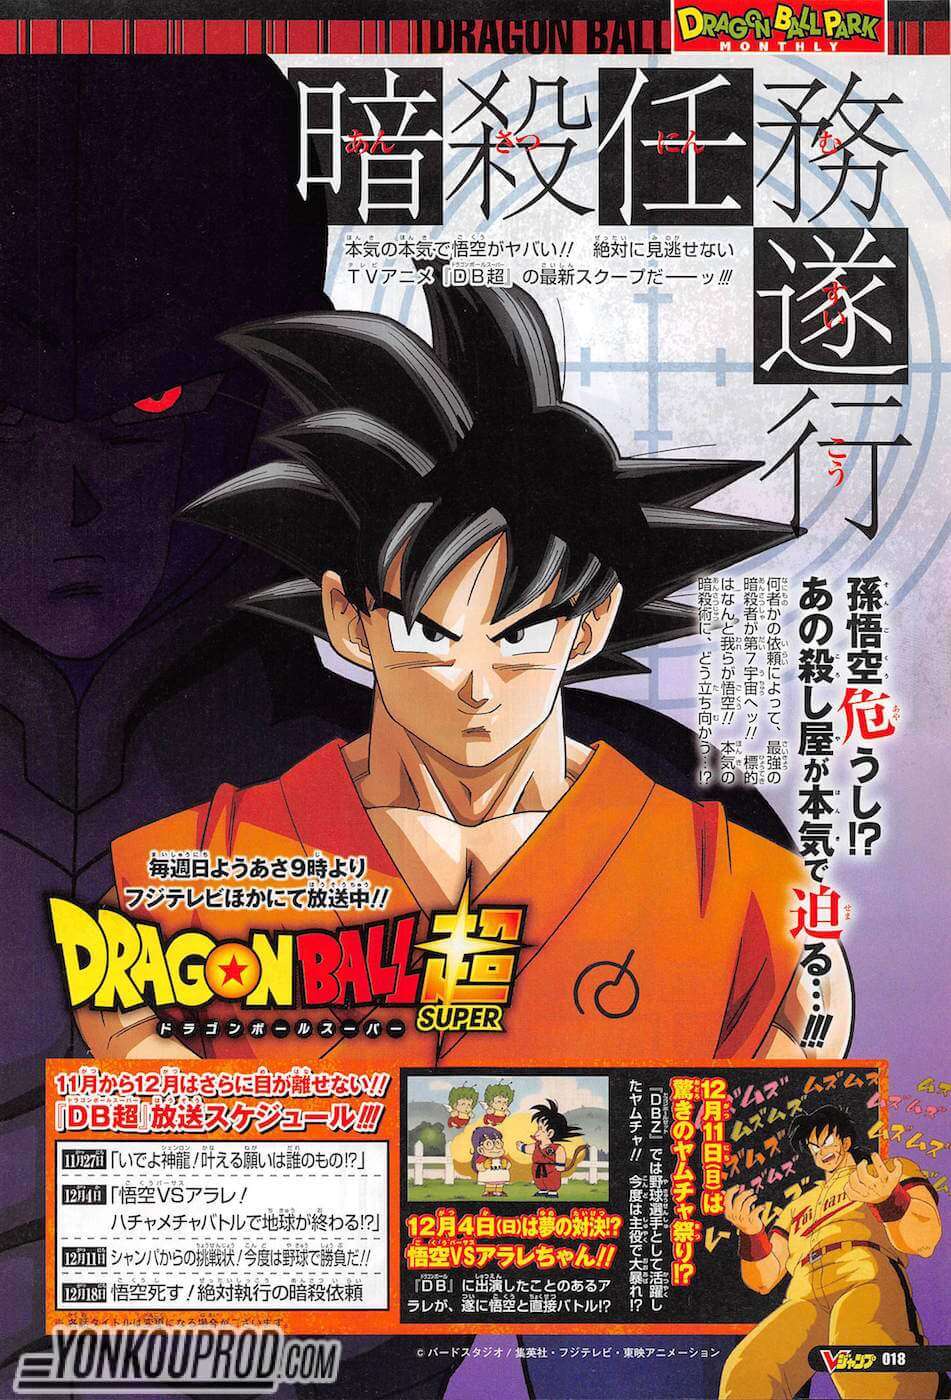 Calendário Dragon Ball Super Janeiro 2017 Poster